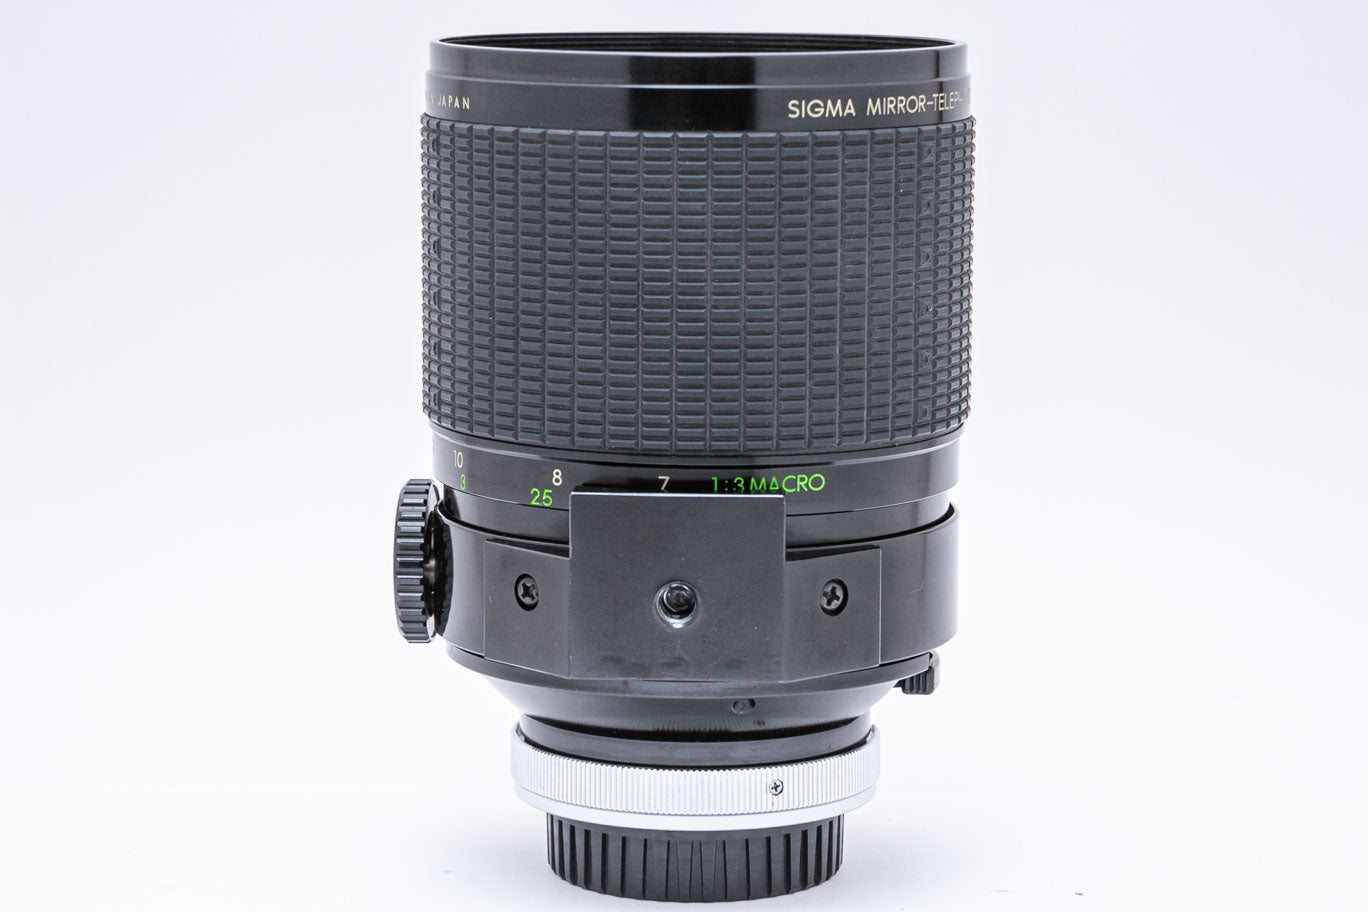 SIGMA Mirror Telephoto MC 600mm F8 Canon FD用